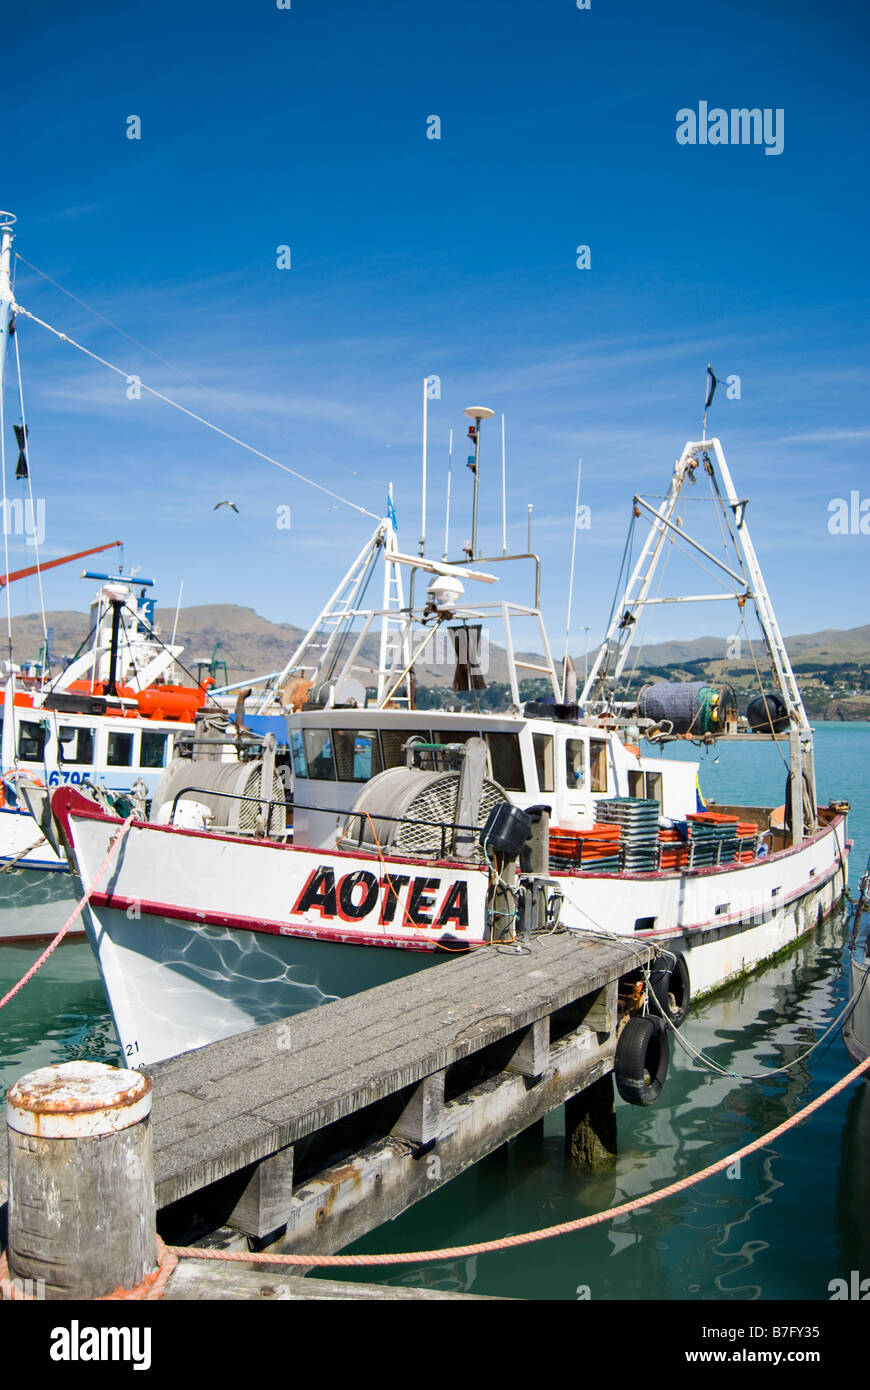 Commercial fishing boat, Lyttelton Harbour, Lyttelton, Banks Peninsula, Canterbury, New Zealand Stock Photo